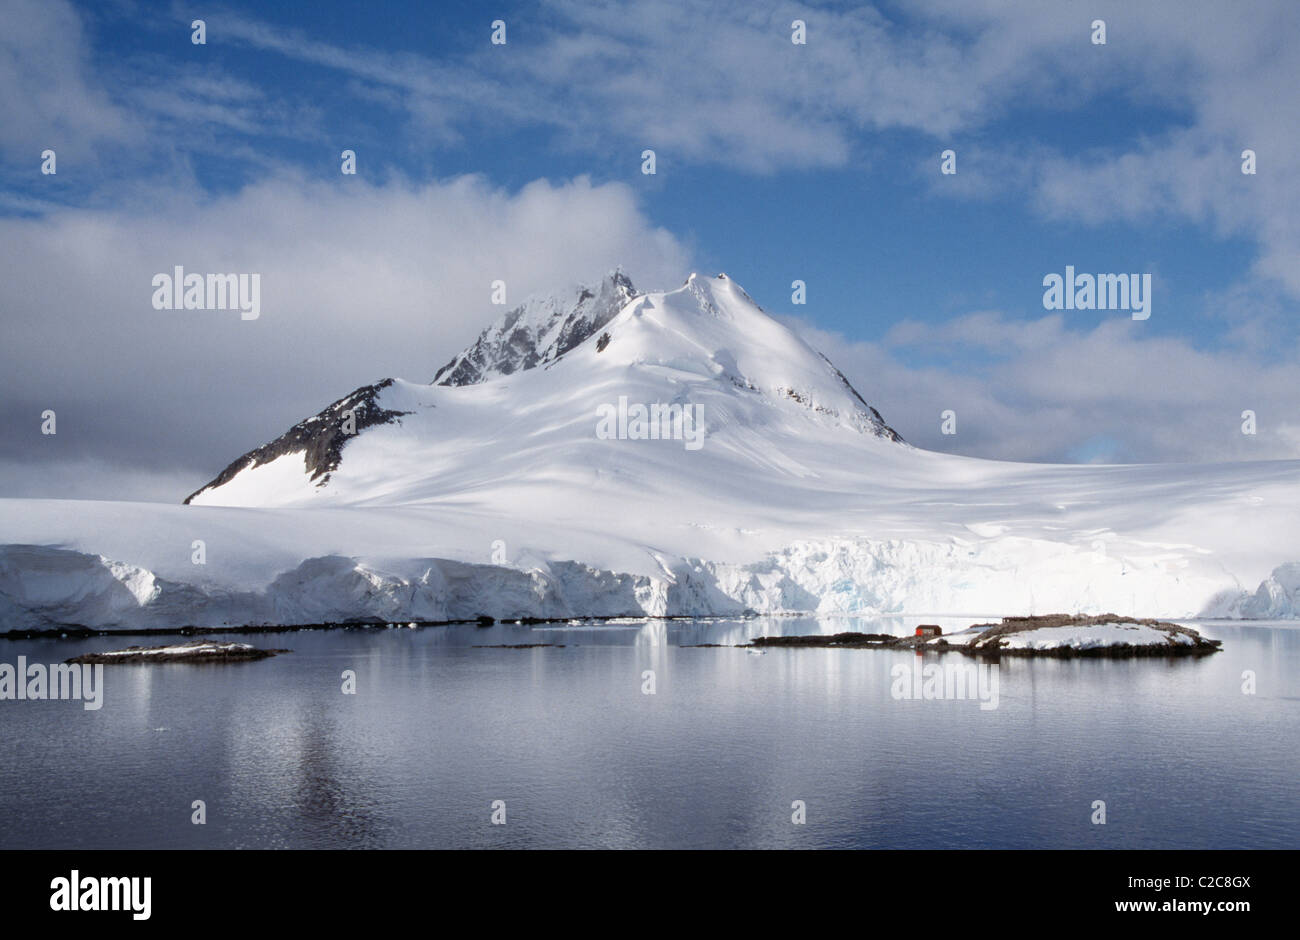 Port Lockroy Antarctica Stock Photo - Alamy